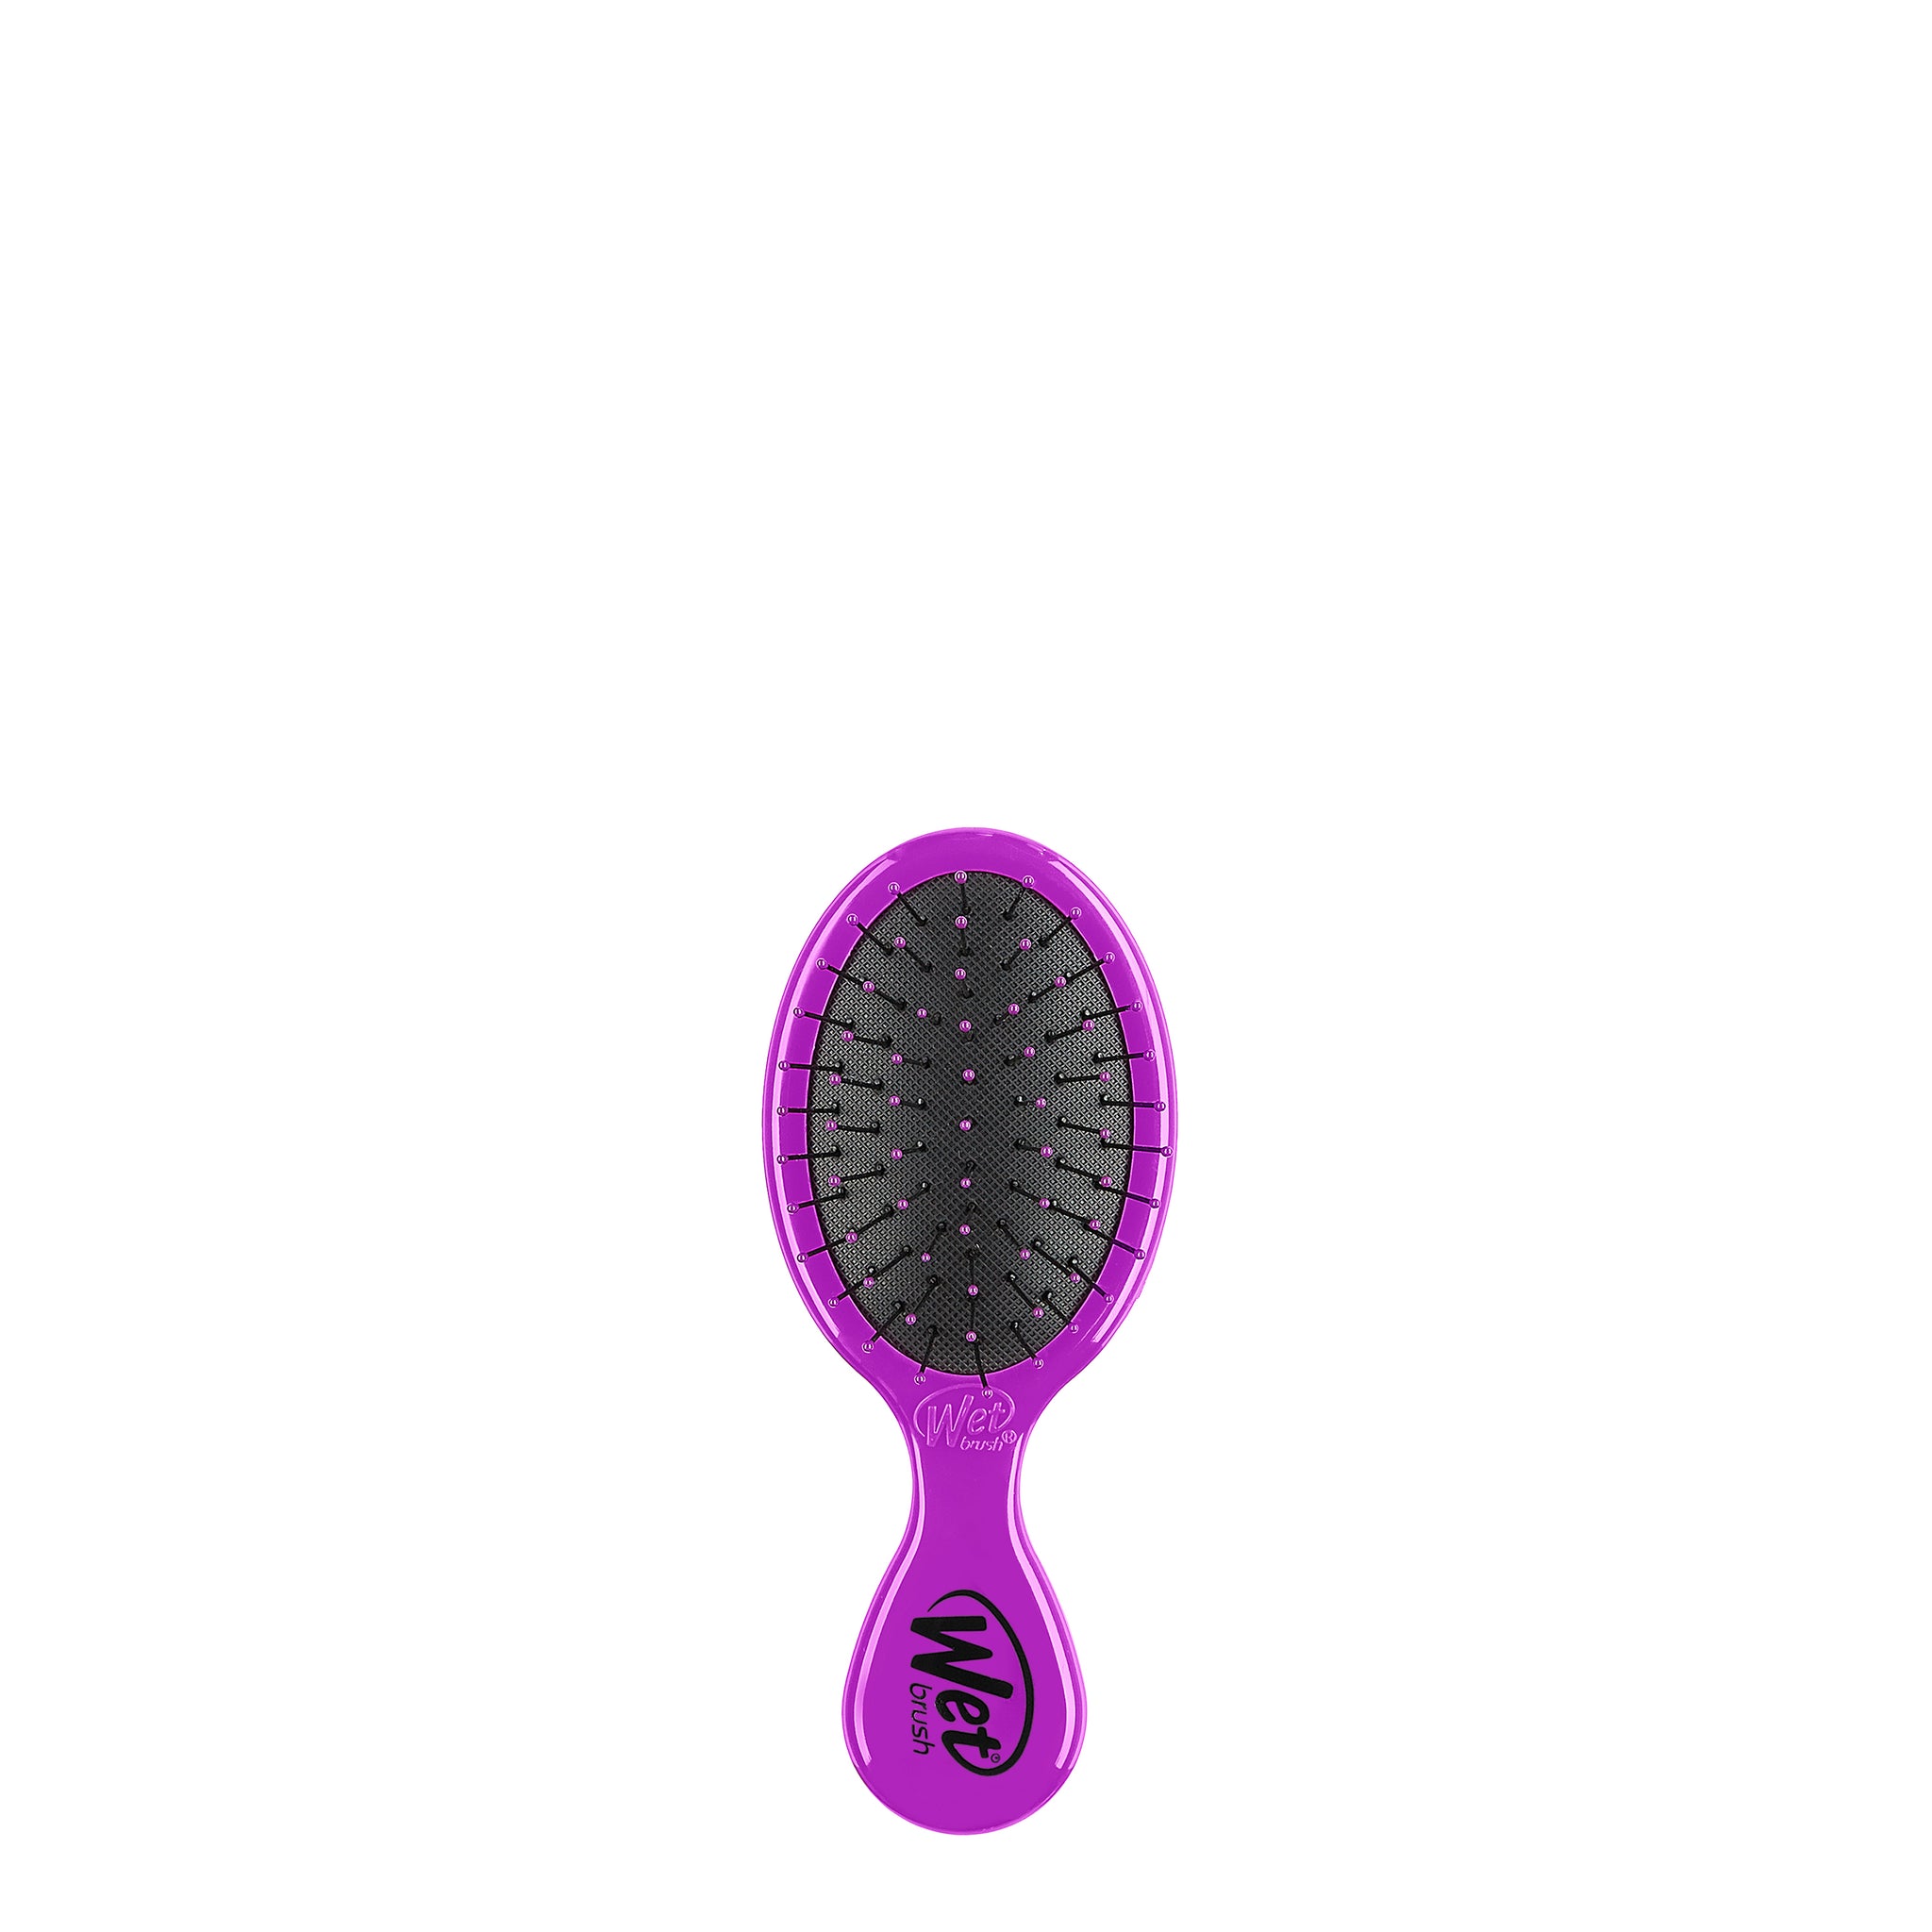 Wet Brush Mini Detangler Hair Brush - Speckle